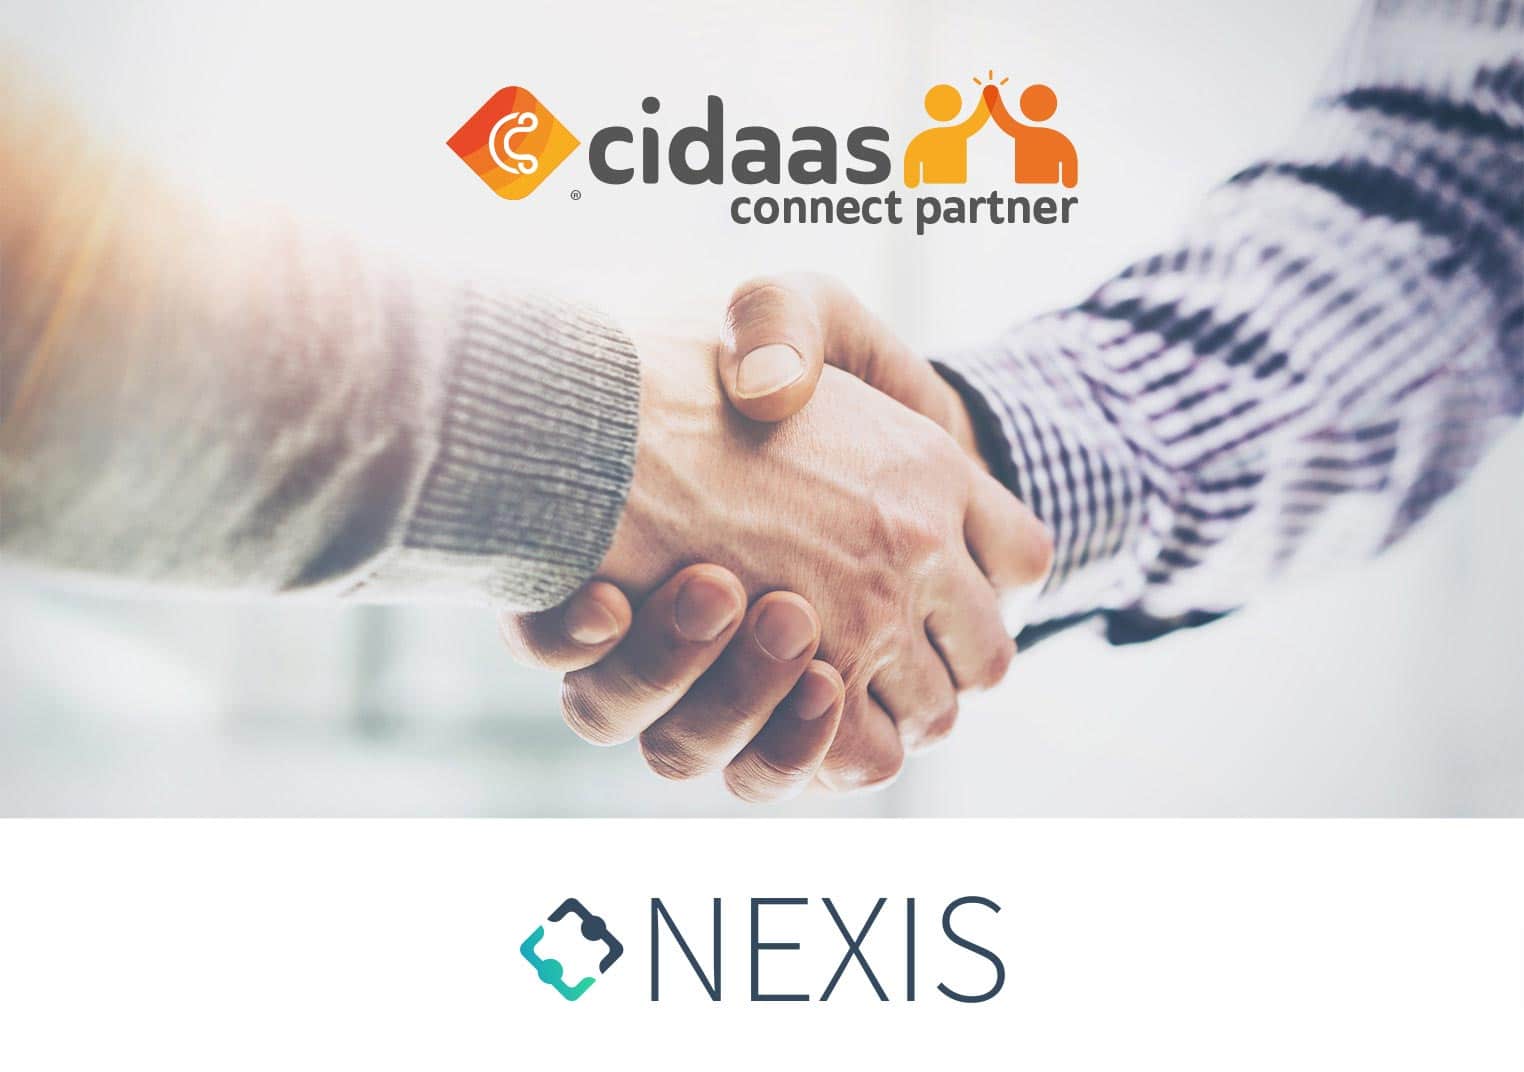 Nexis und cidaas gehen eine Partnerschaft für erstklassiges Identity & Access Management ein